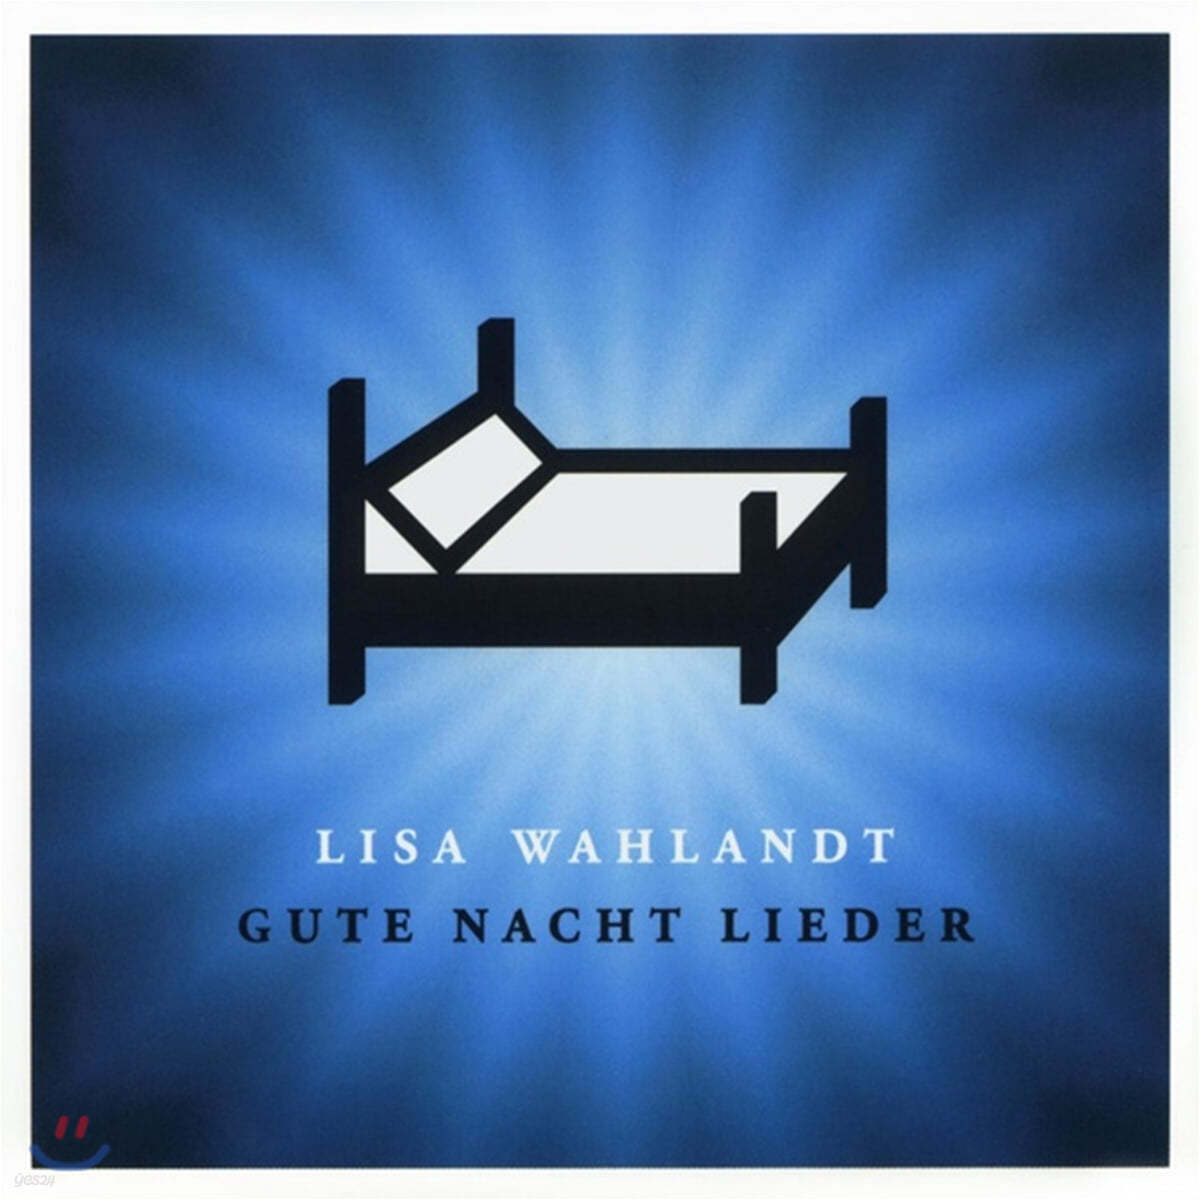 Lisa Wahlandt (리사 발란드) - Gute Nacht Lieder